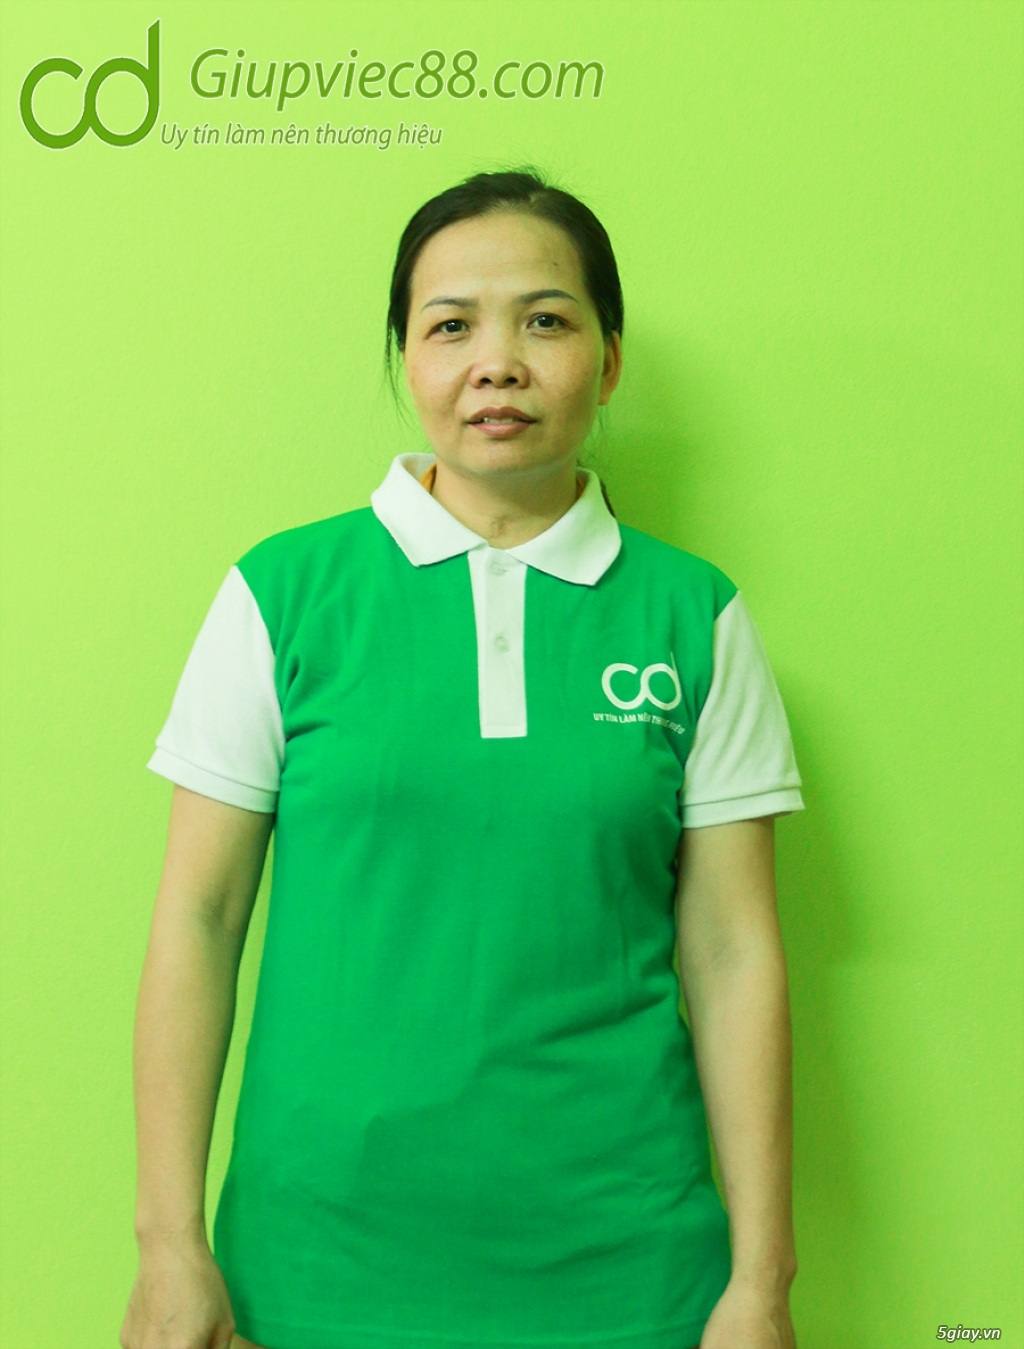 Nhận giúp việc gia đình tại Hà Nội chuyên nghiệp